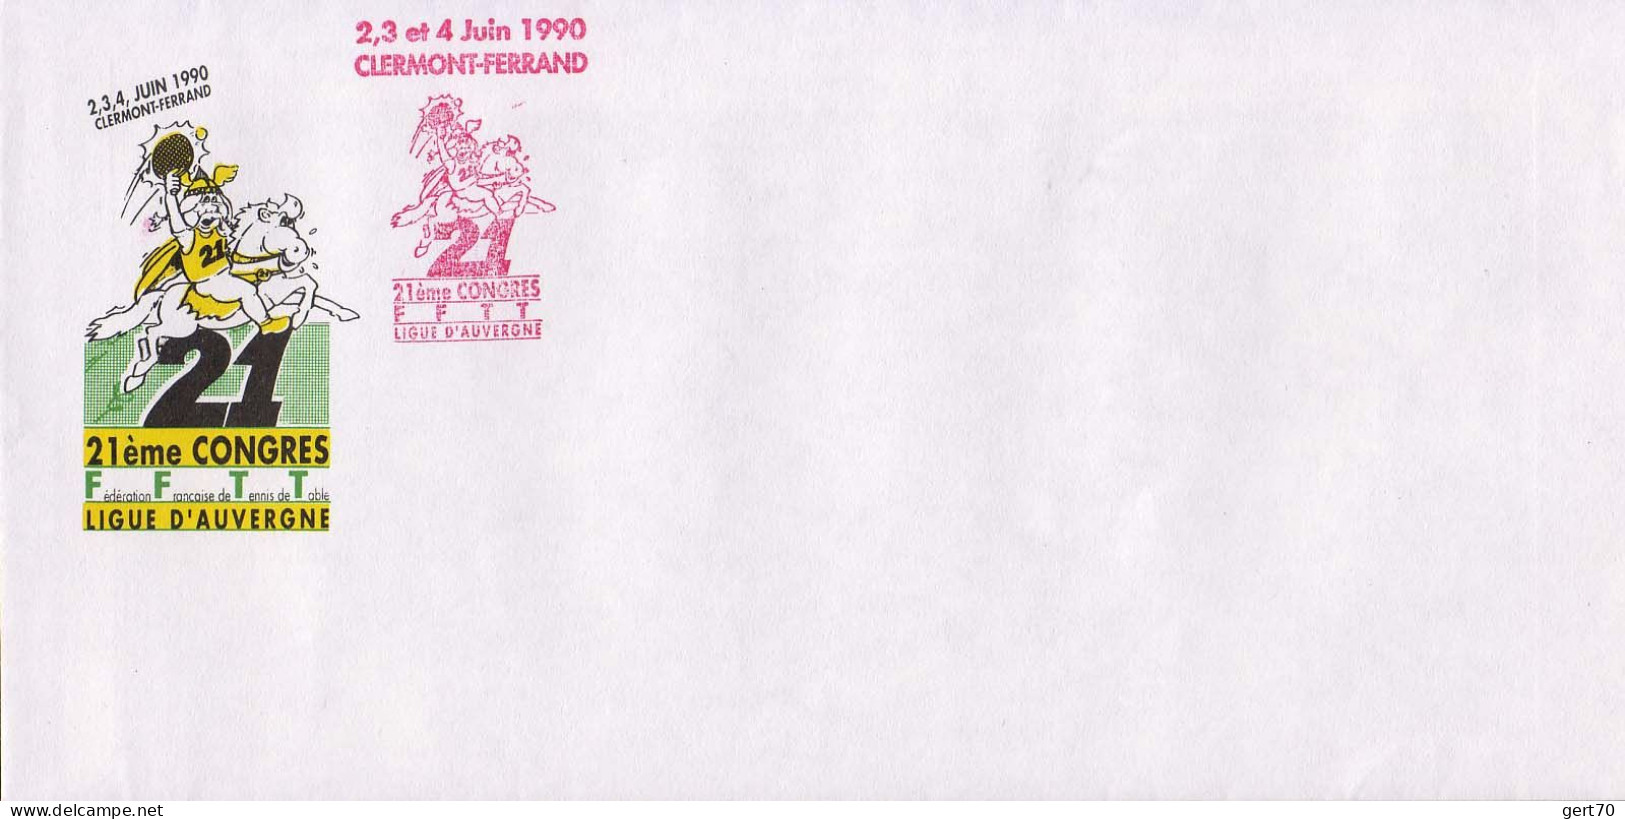 France 1990, Mint Cover / Enveloppe Vierge / 21st French TT Congress / Clermont-Ferrand - Tenis De Mesa